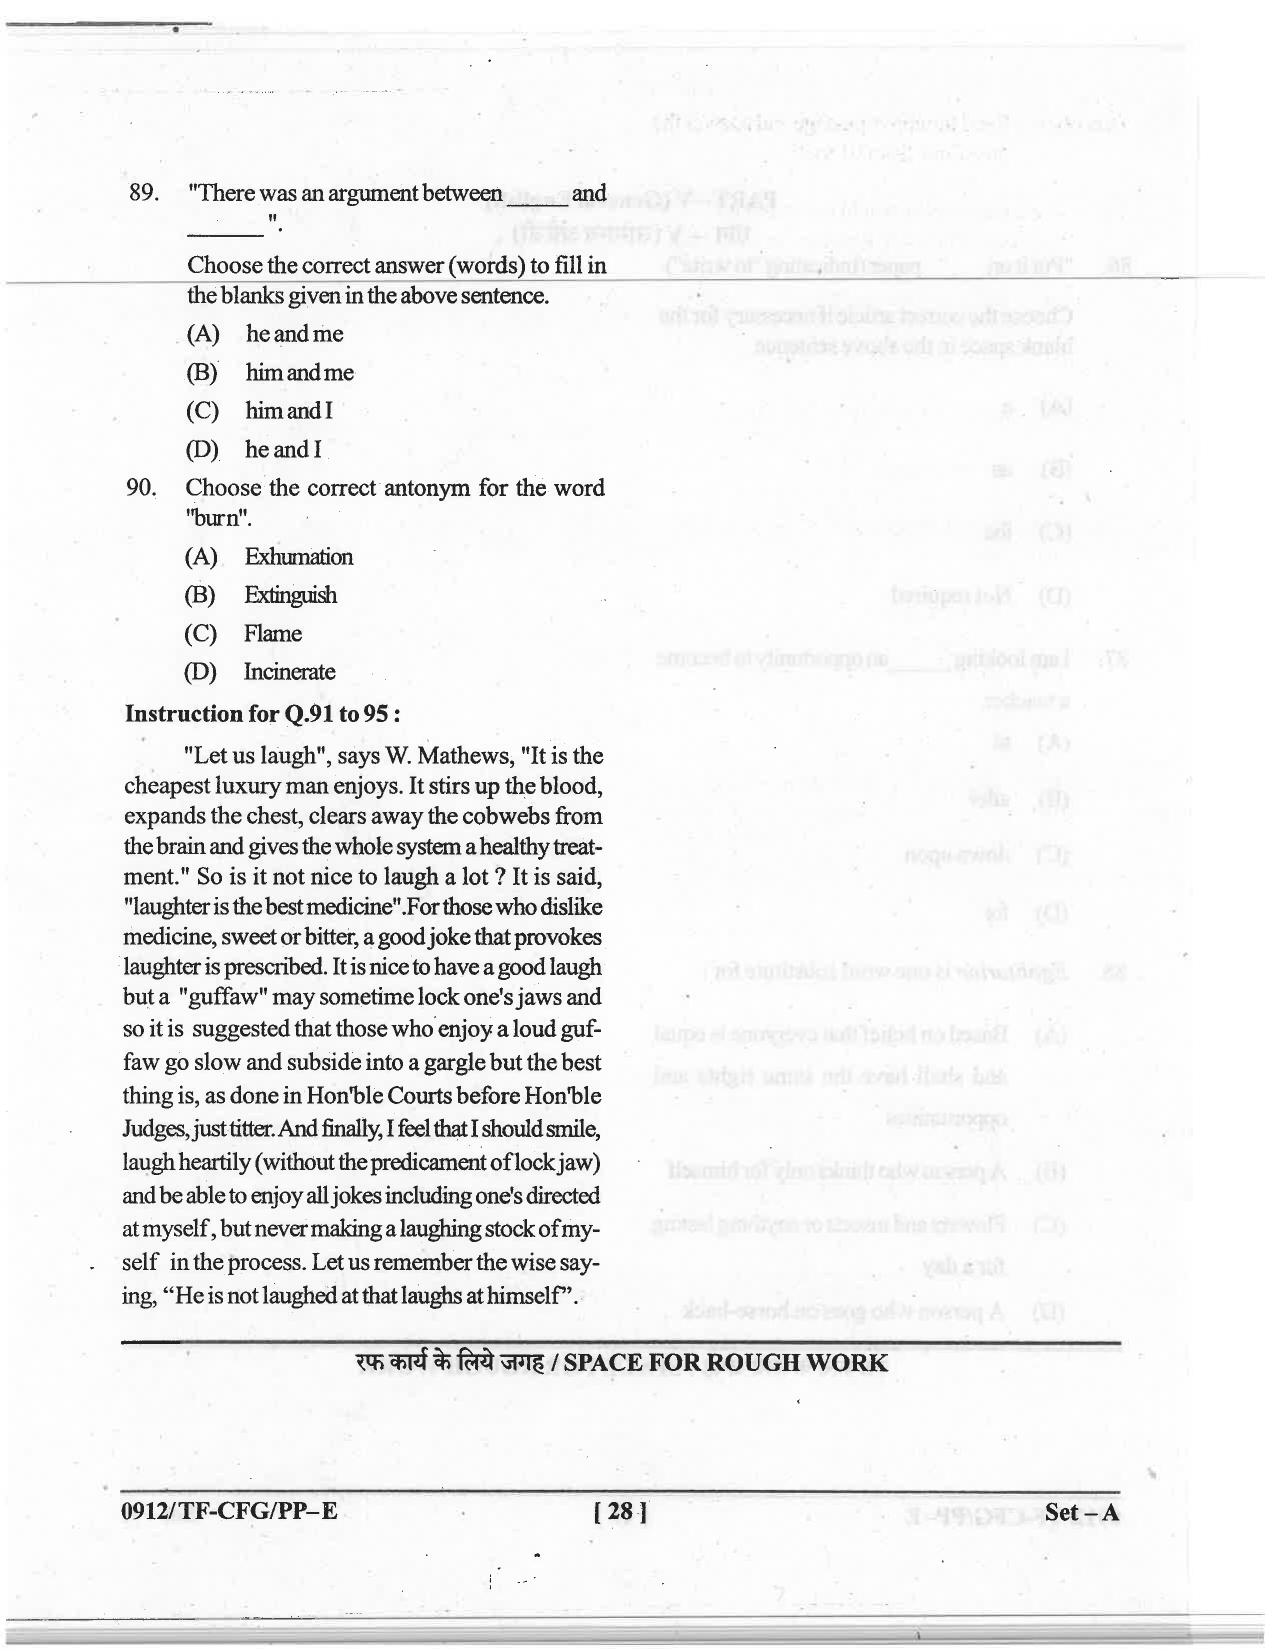 CG Pre B.A B.Ed / Pre B.Sc. B.Ed 2019 Question Paper - Page 28